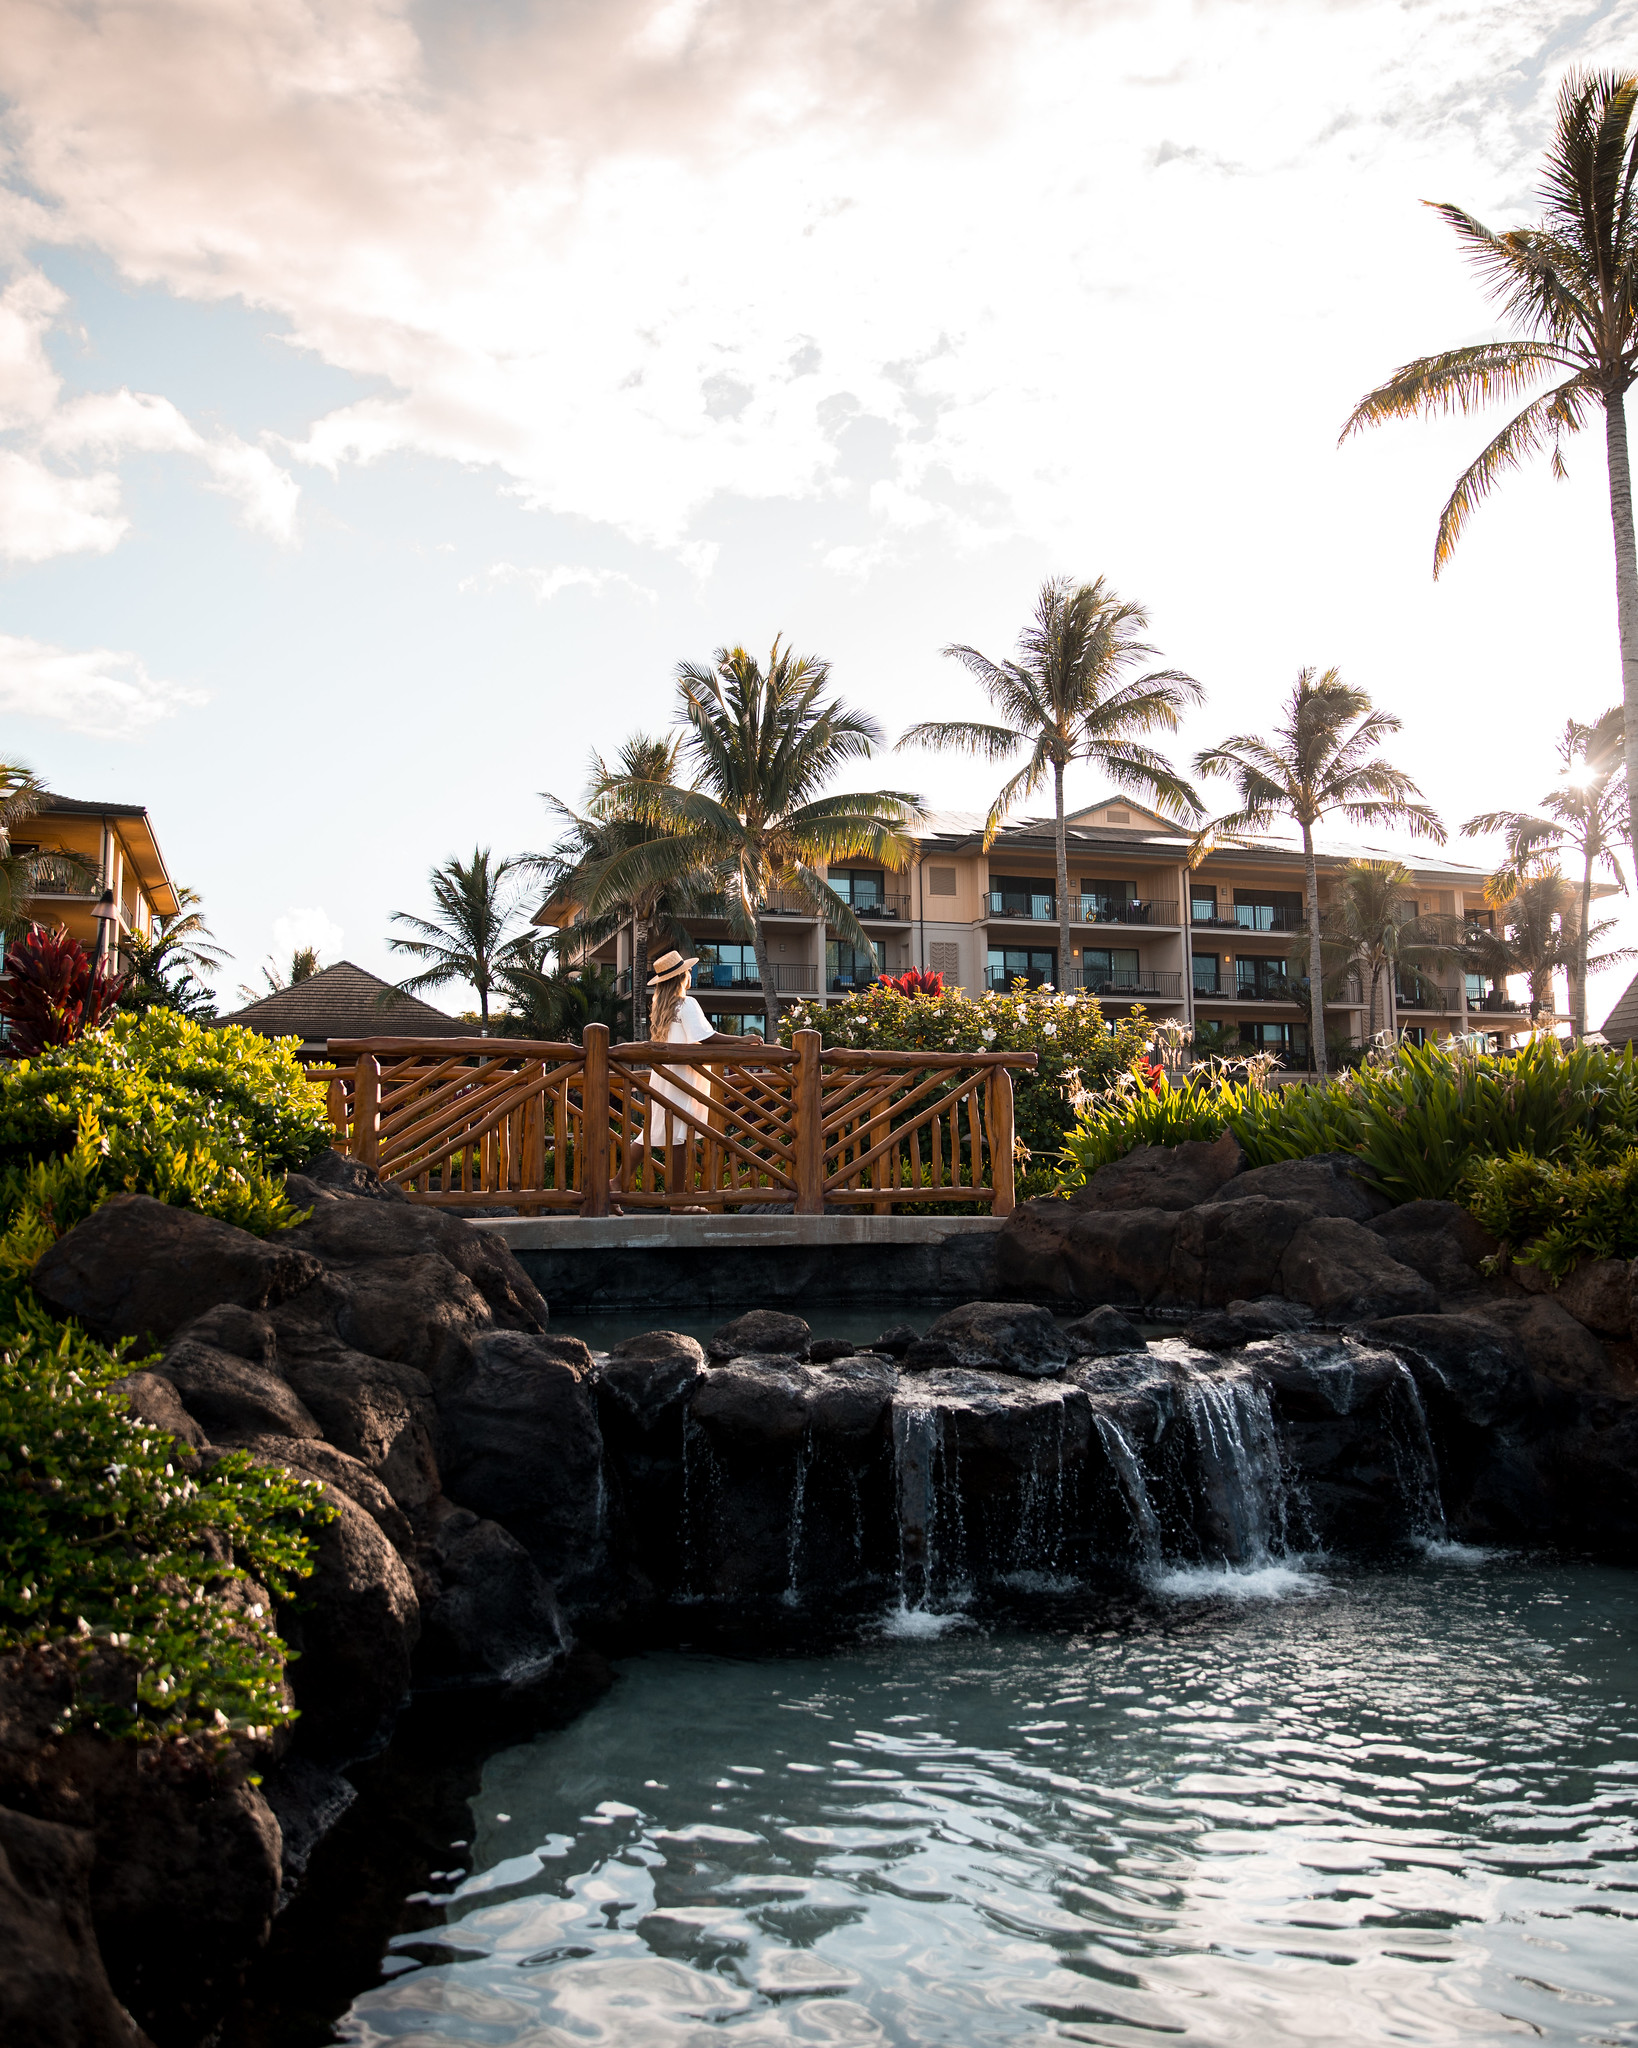 Koloa Landing Ressort in Poipu, Autograph Collection - Kauai Hotel, Koloa Landing Resort Kauai, Kauai Travel, Kauai Travel Tips, Where to stay in Kauai, What to do in Kauai, Kauai | Wanderlustyle.com